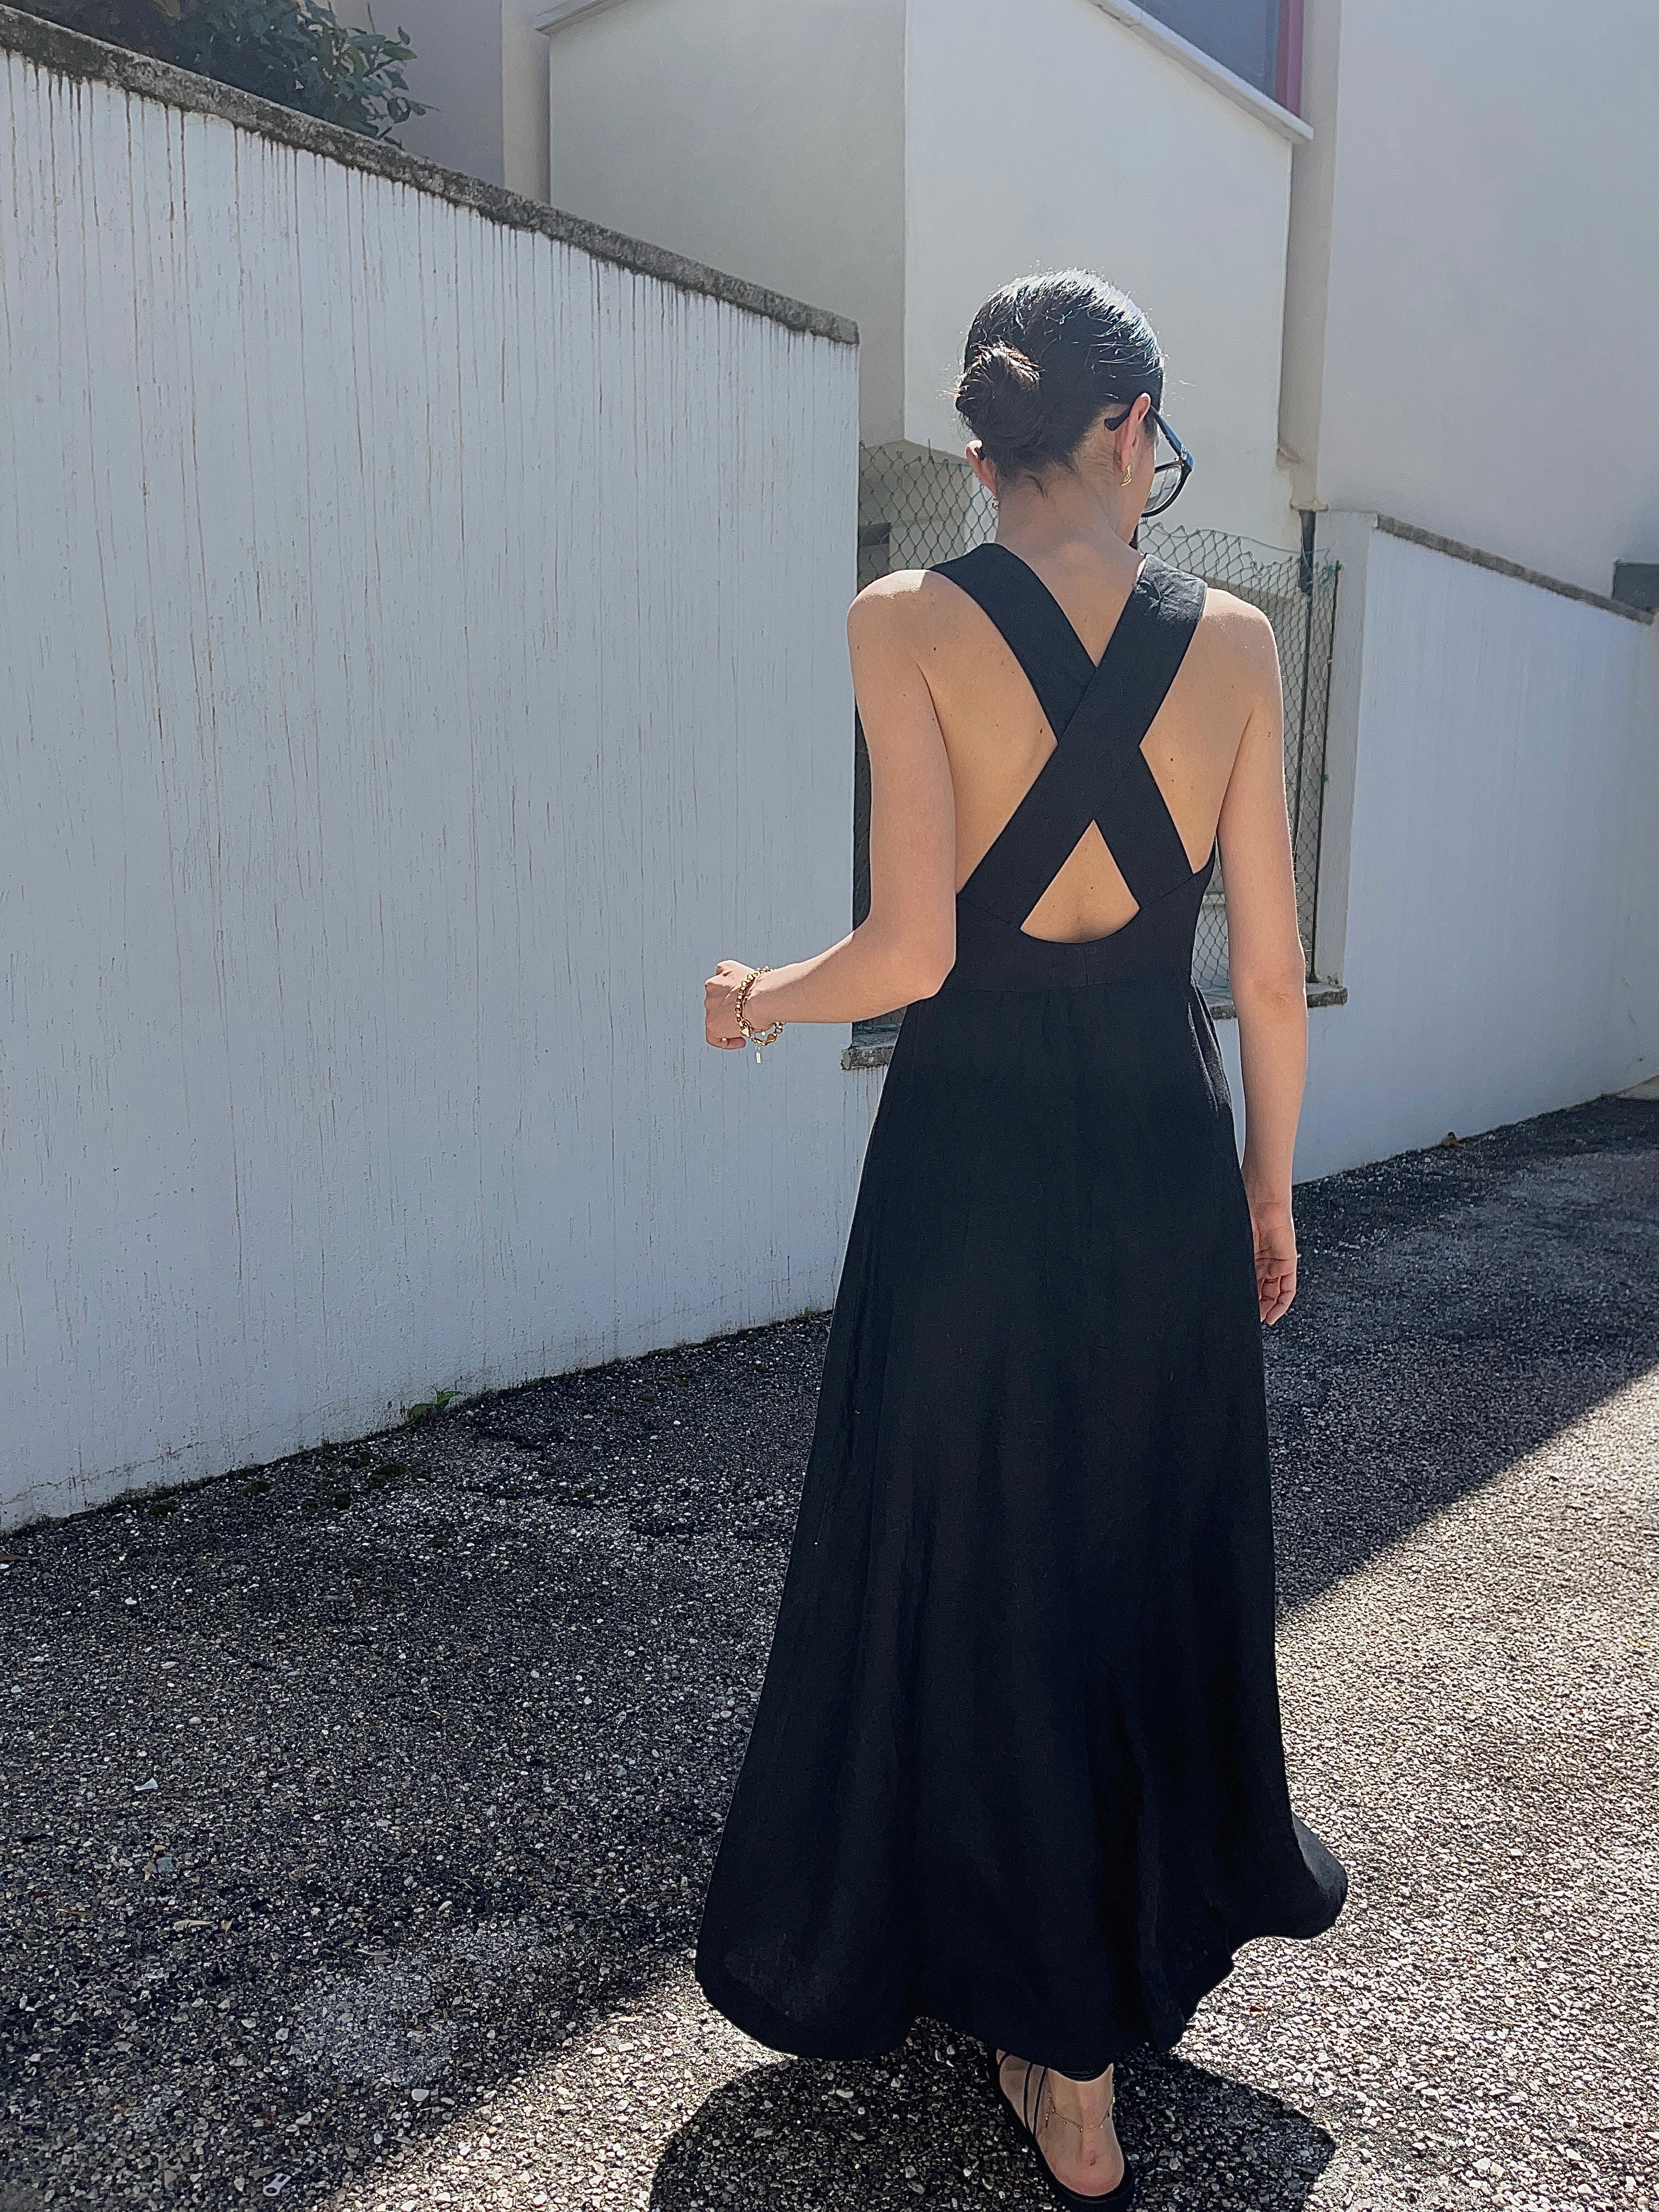 100 linen black dress